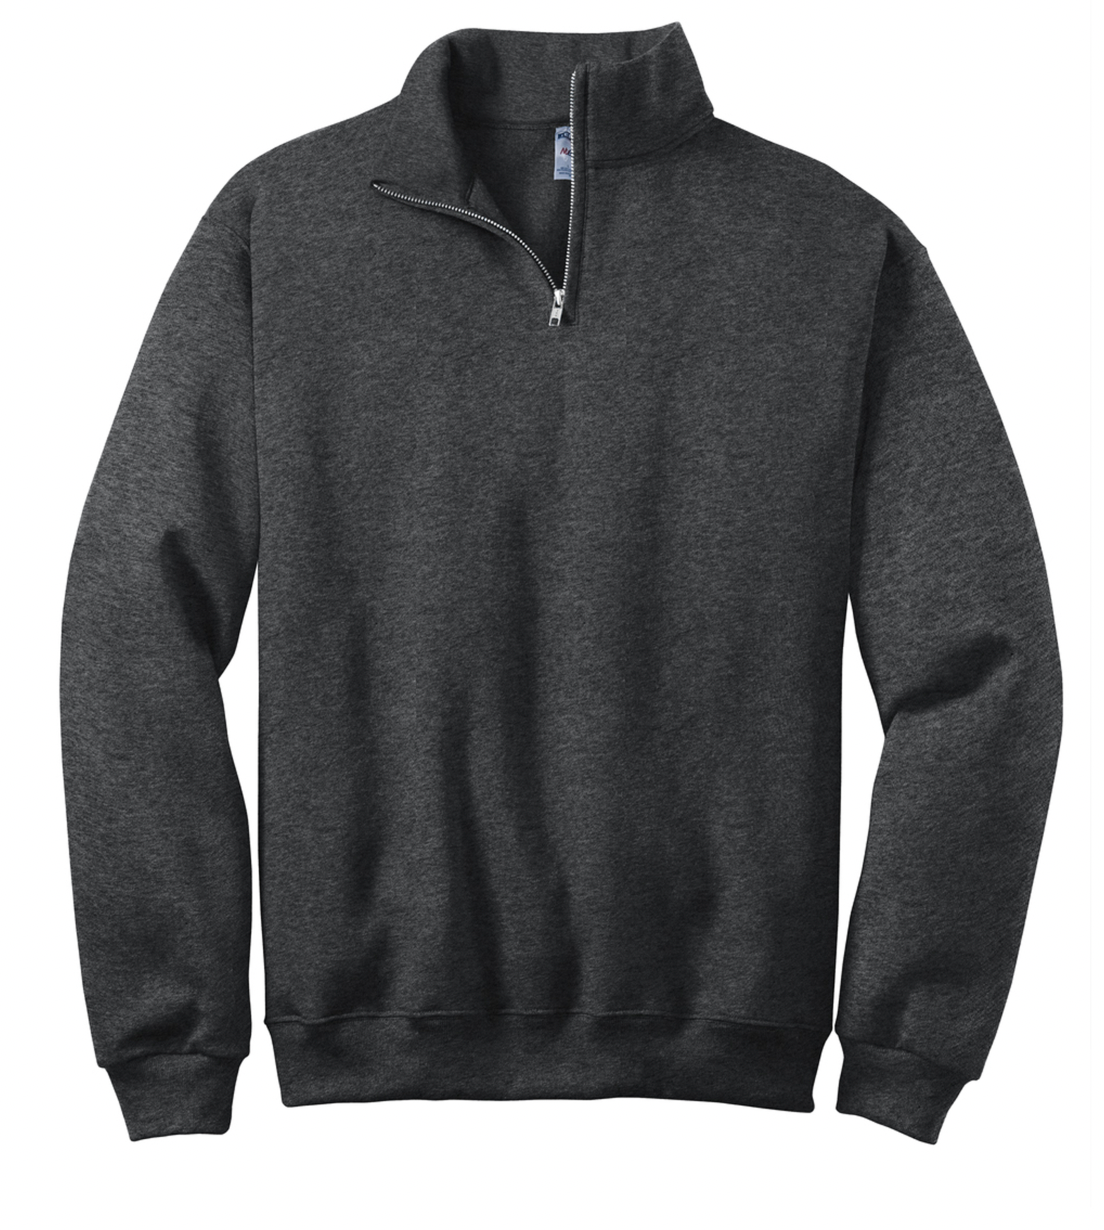 OhioRise - Integrated Services 1/4 Zip Sweatshirt